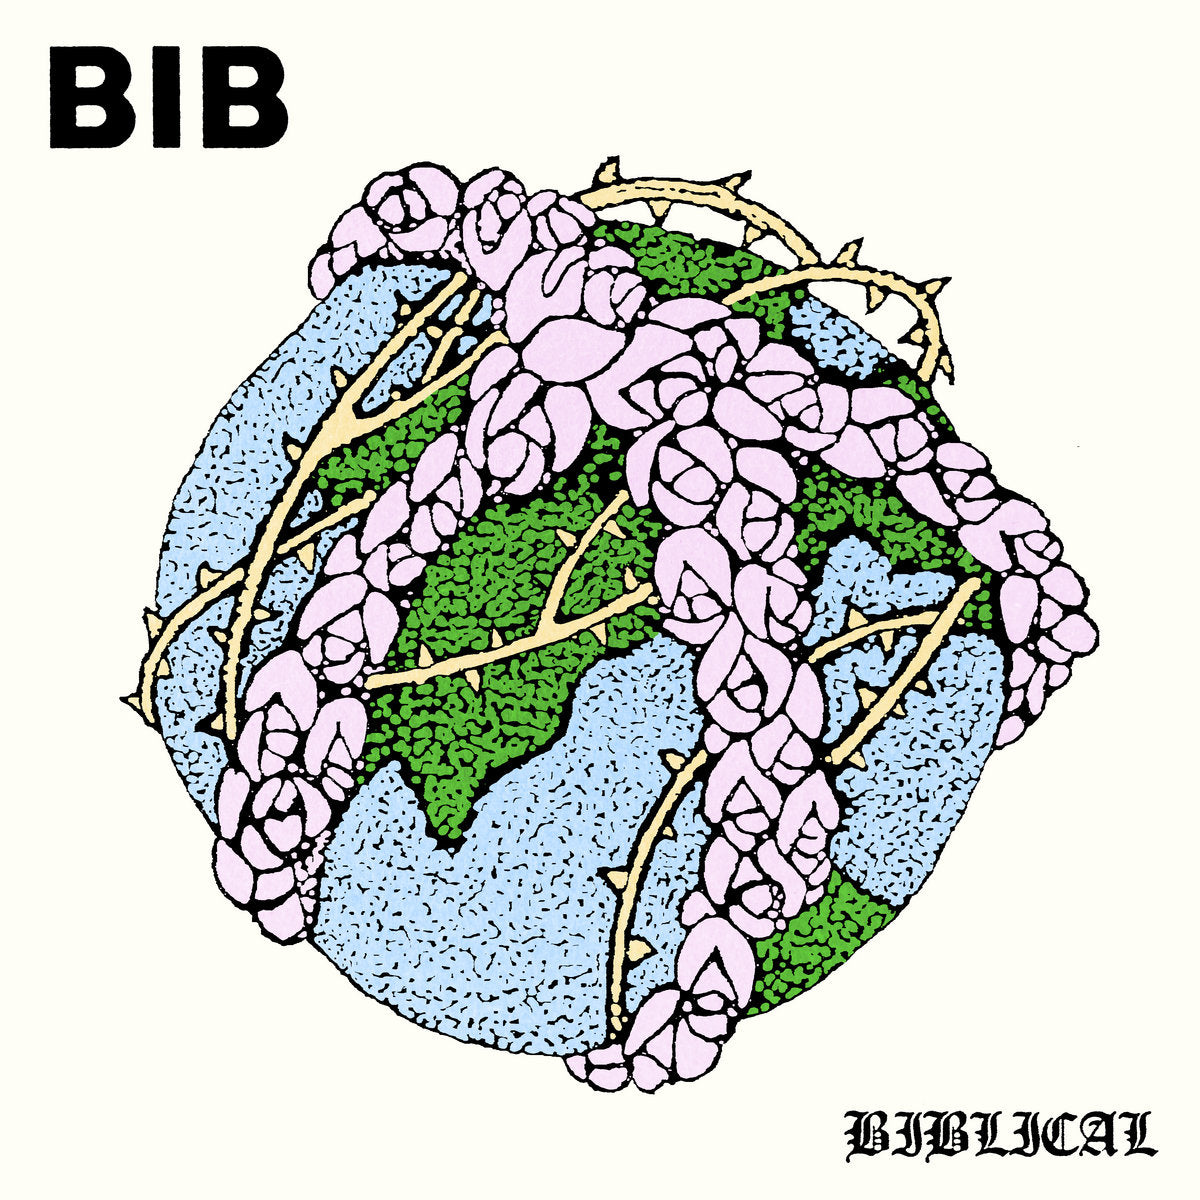 BIB - BIBLICAL Vinyl 7”